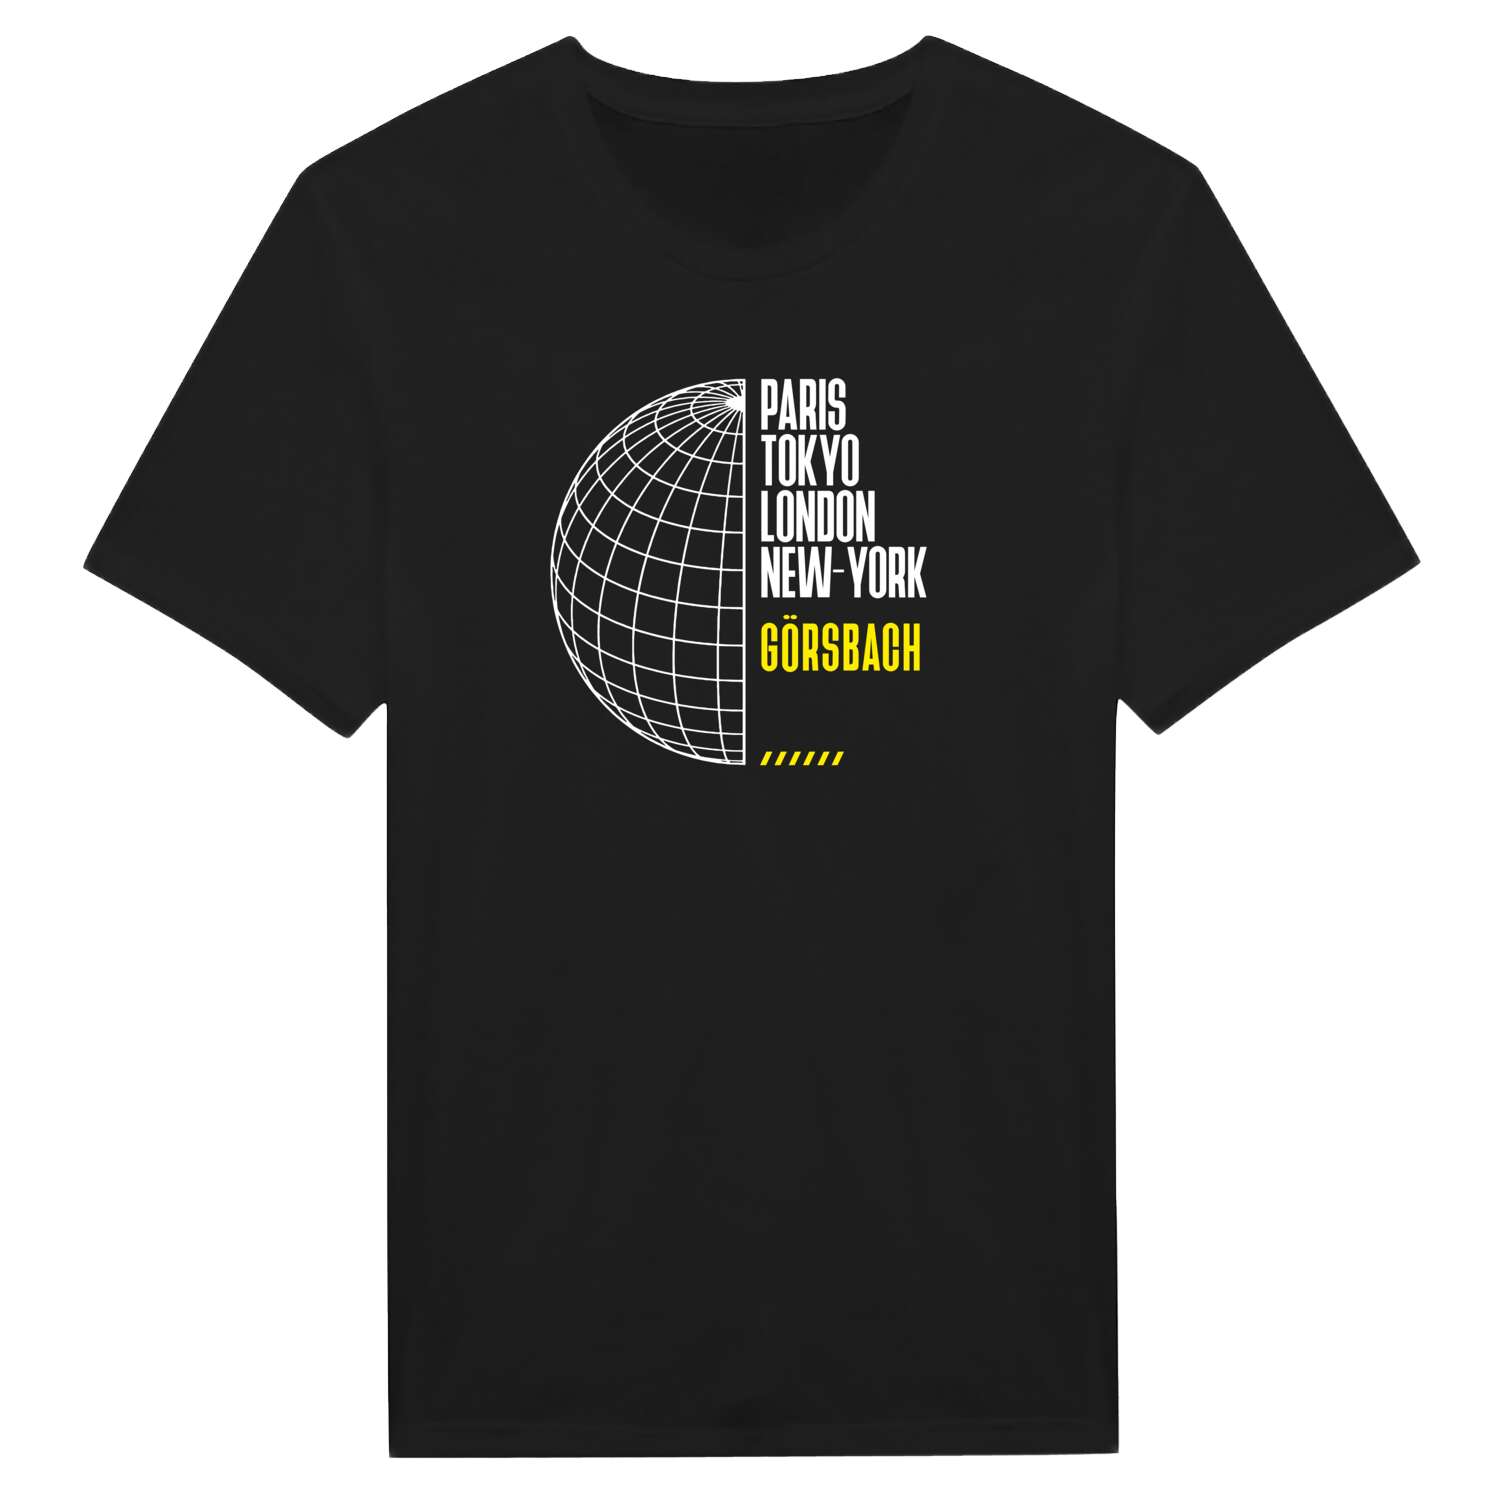 Görsbach T-Shirt »Paris Tokyo London«